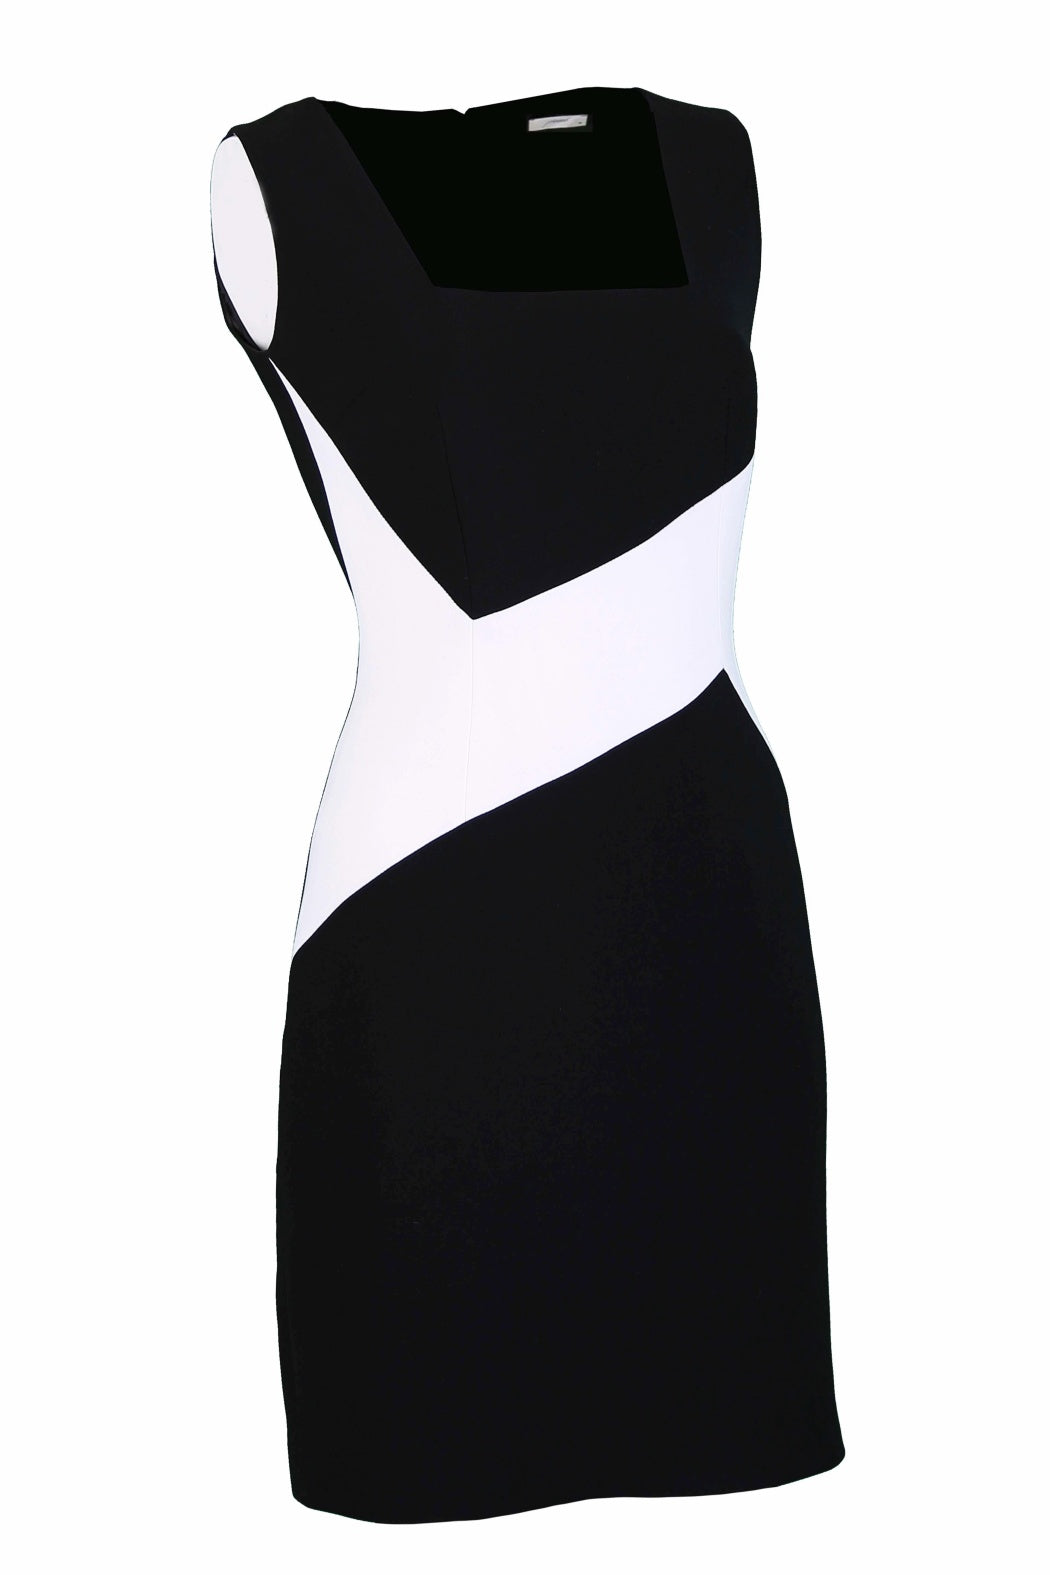 Block Black & White Square Neck Sleeveless Mini Crepe Dress